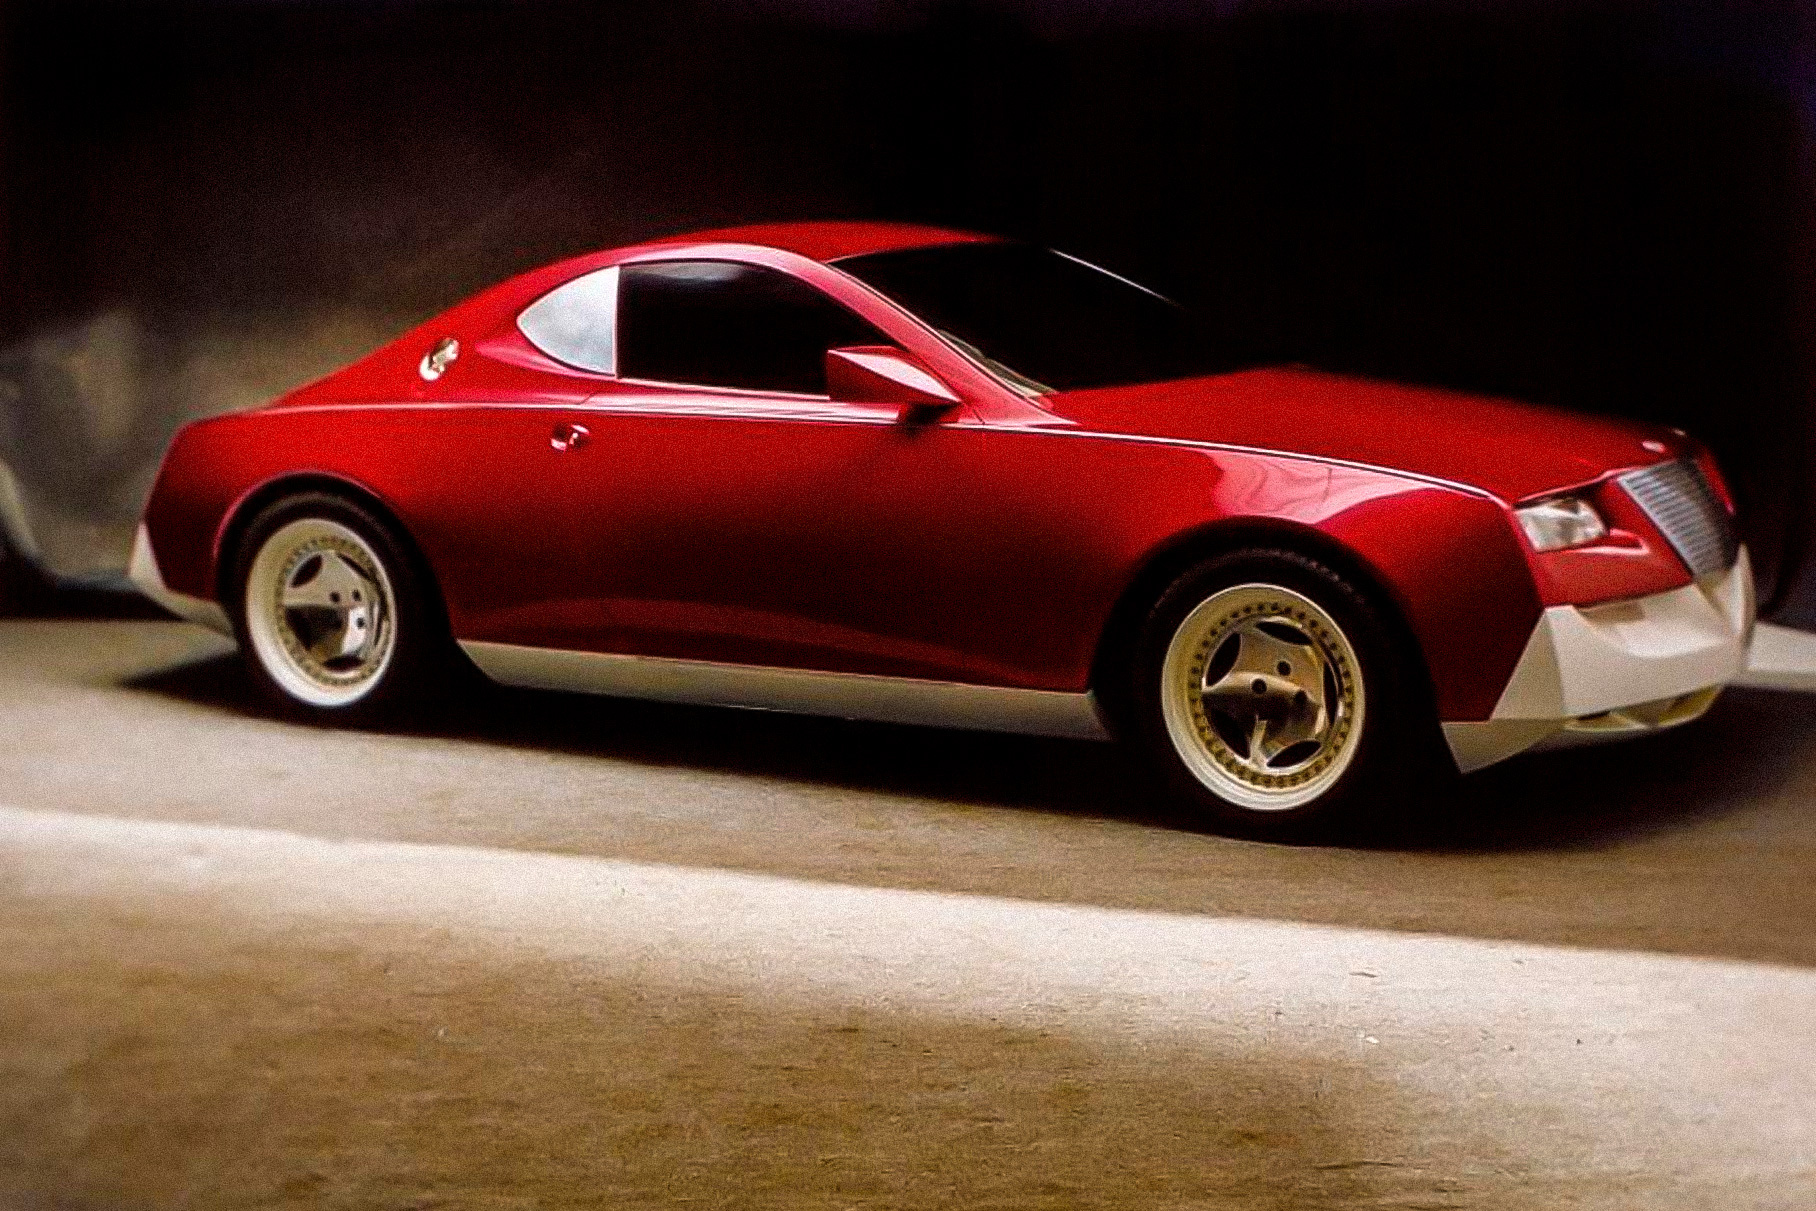 Одна из работ ателье Cardi тех лет: модель Coupe 1997 года